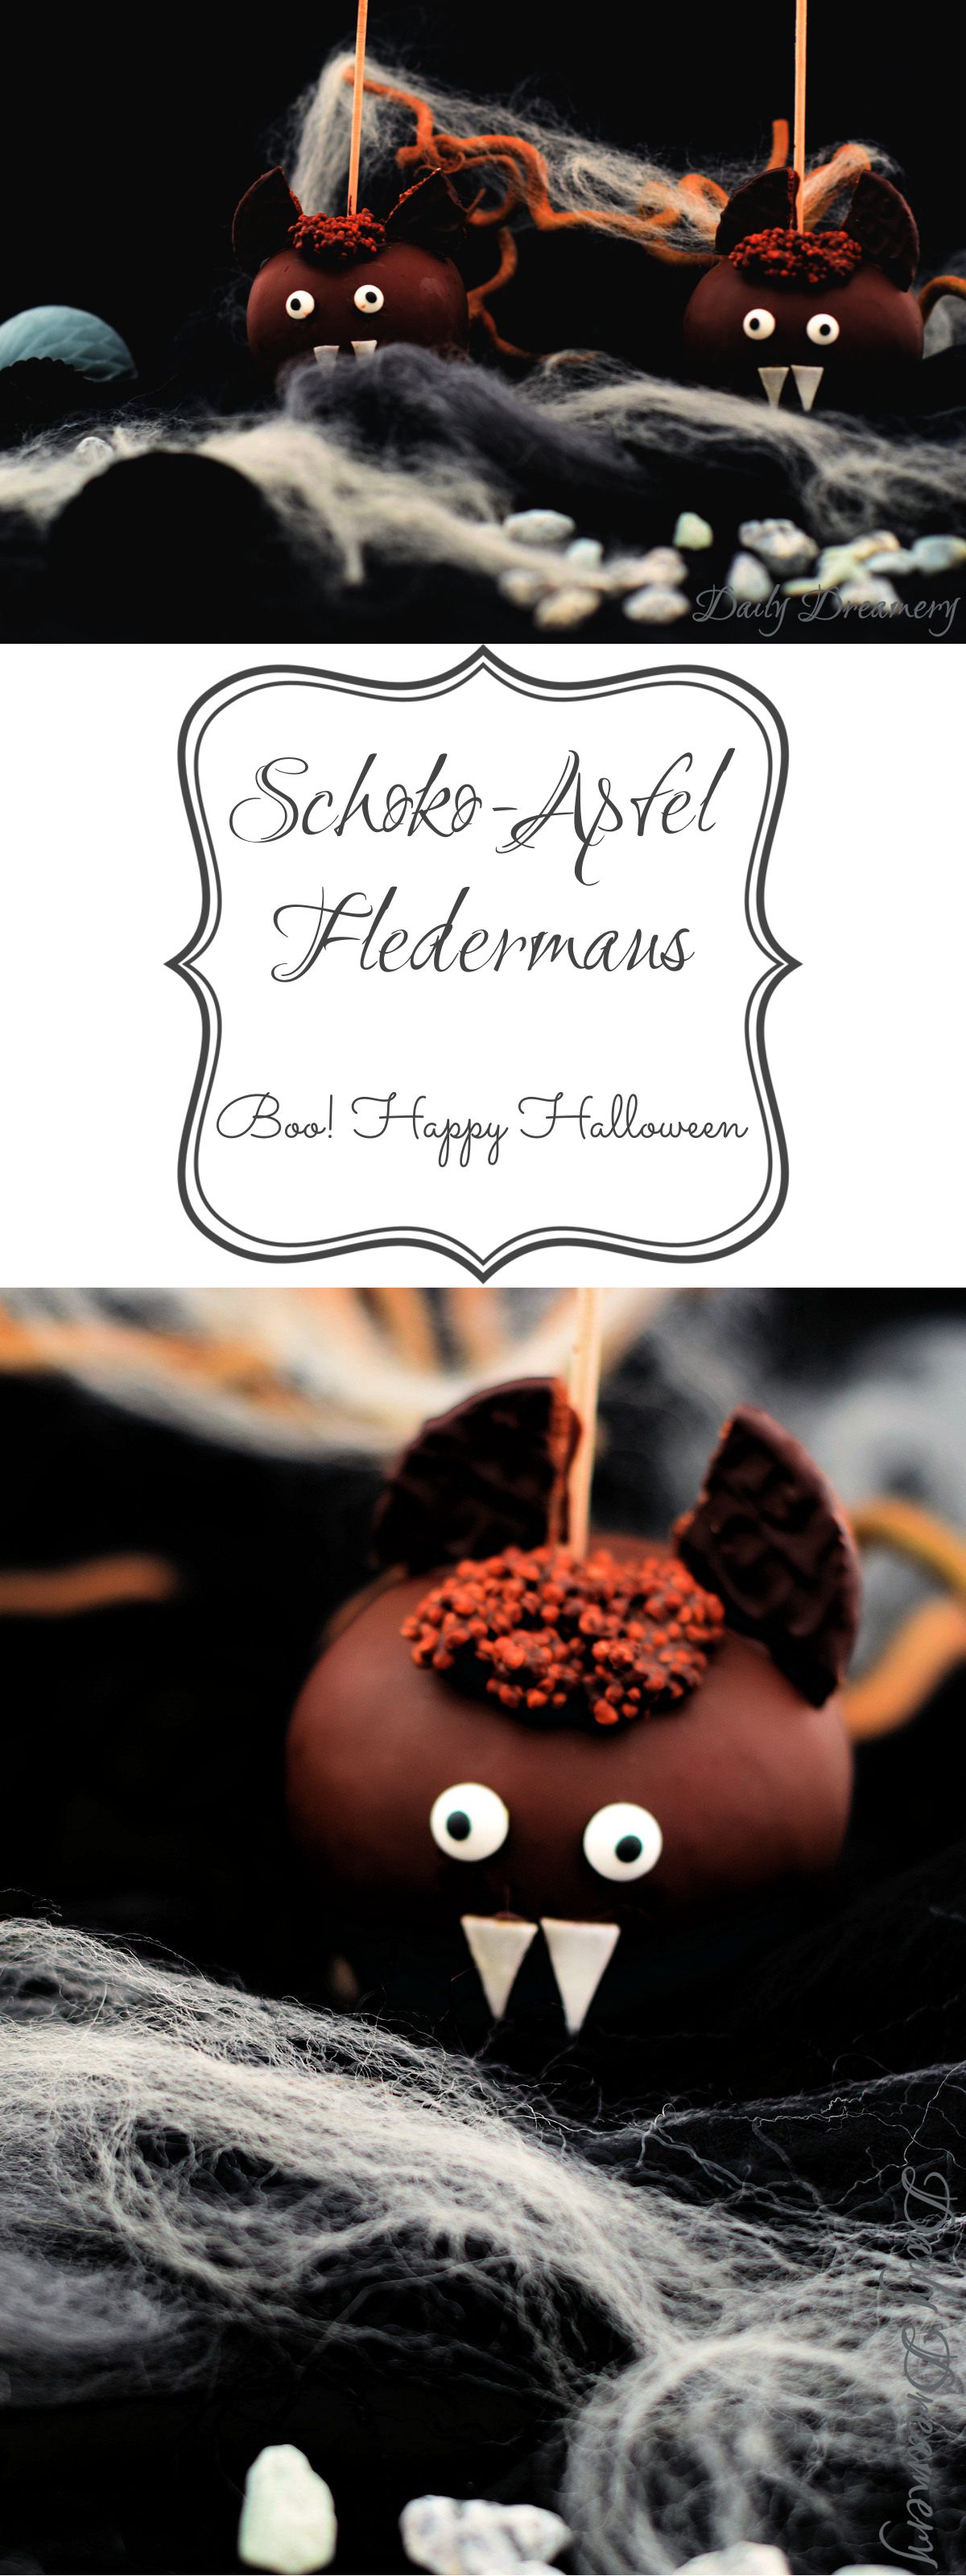 Schoko-Apfel Fledermaus - perfekter Snack für Halloween-Partys. Die kommen ganz sicher bei Groß und Klein an. #Halloween #Snack #